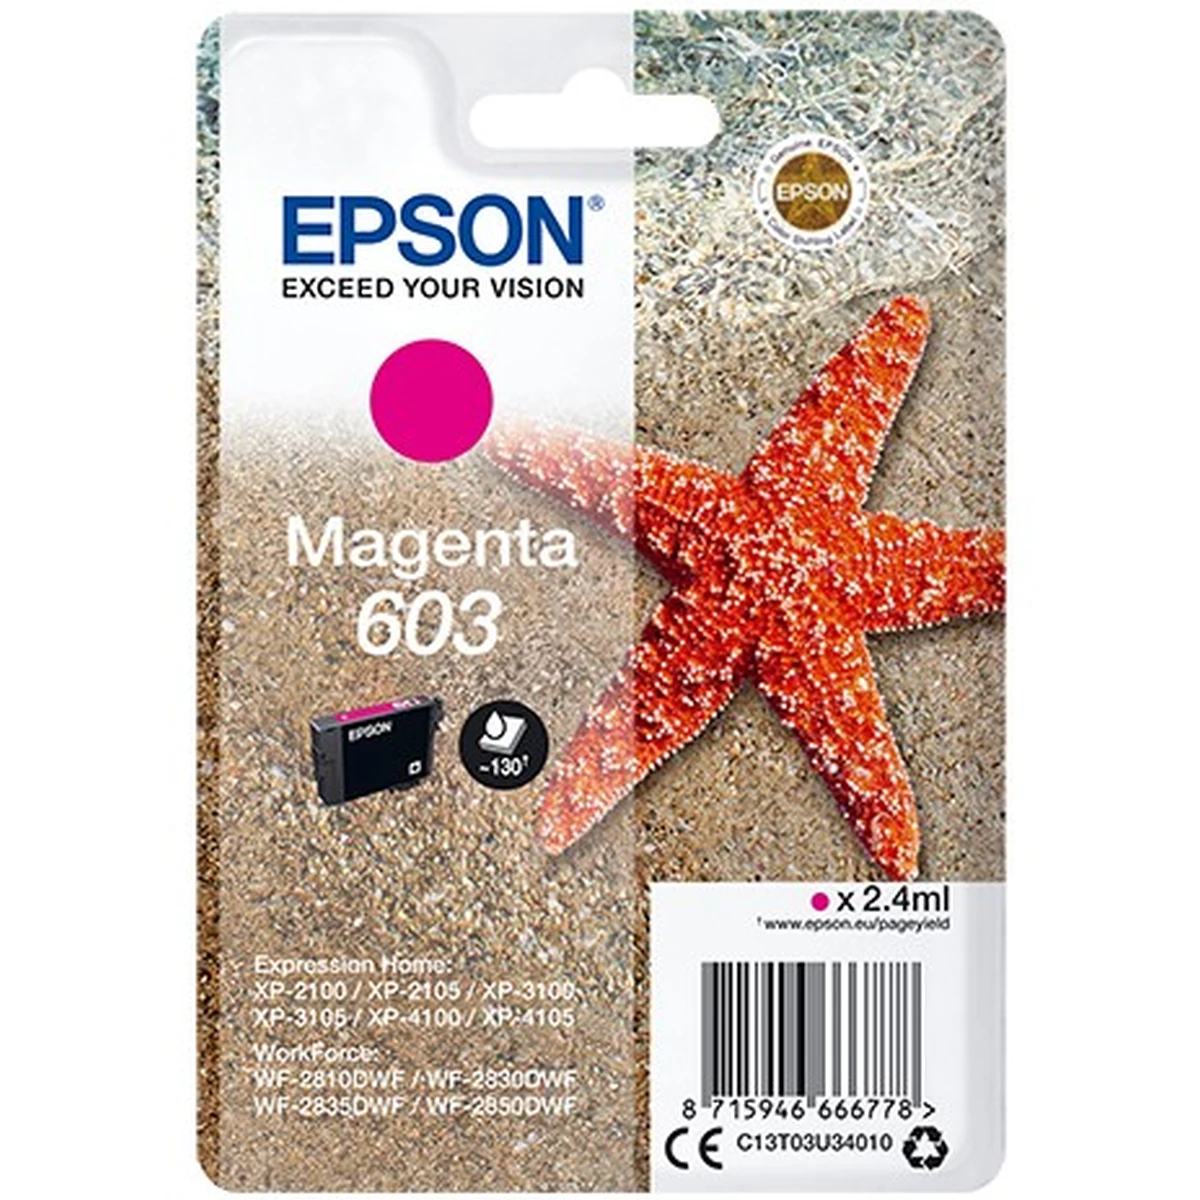 Epson Druckerpatrone '603' magenta 2,4 ml